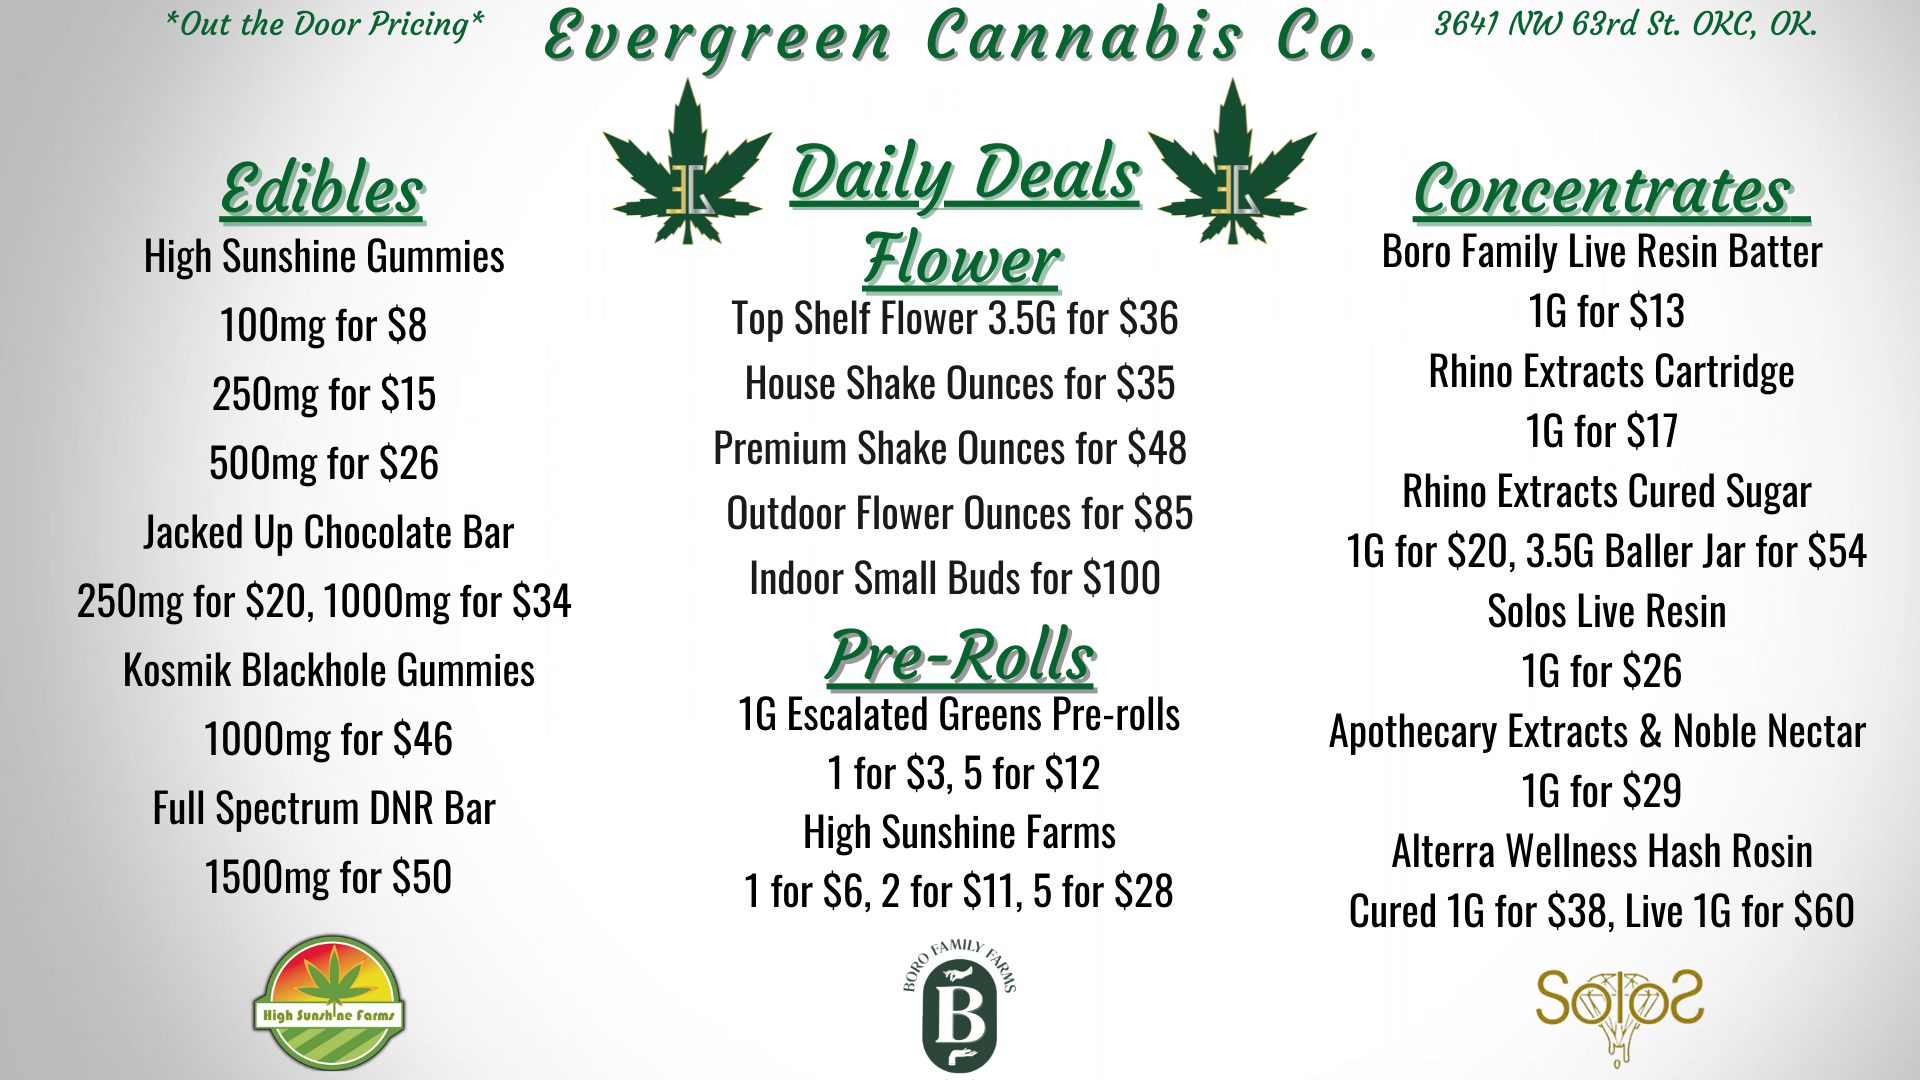 Evergreen Cannabis Company | Oklahoma City, OK Dispensary | Leafly